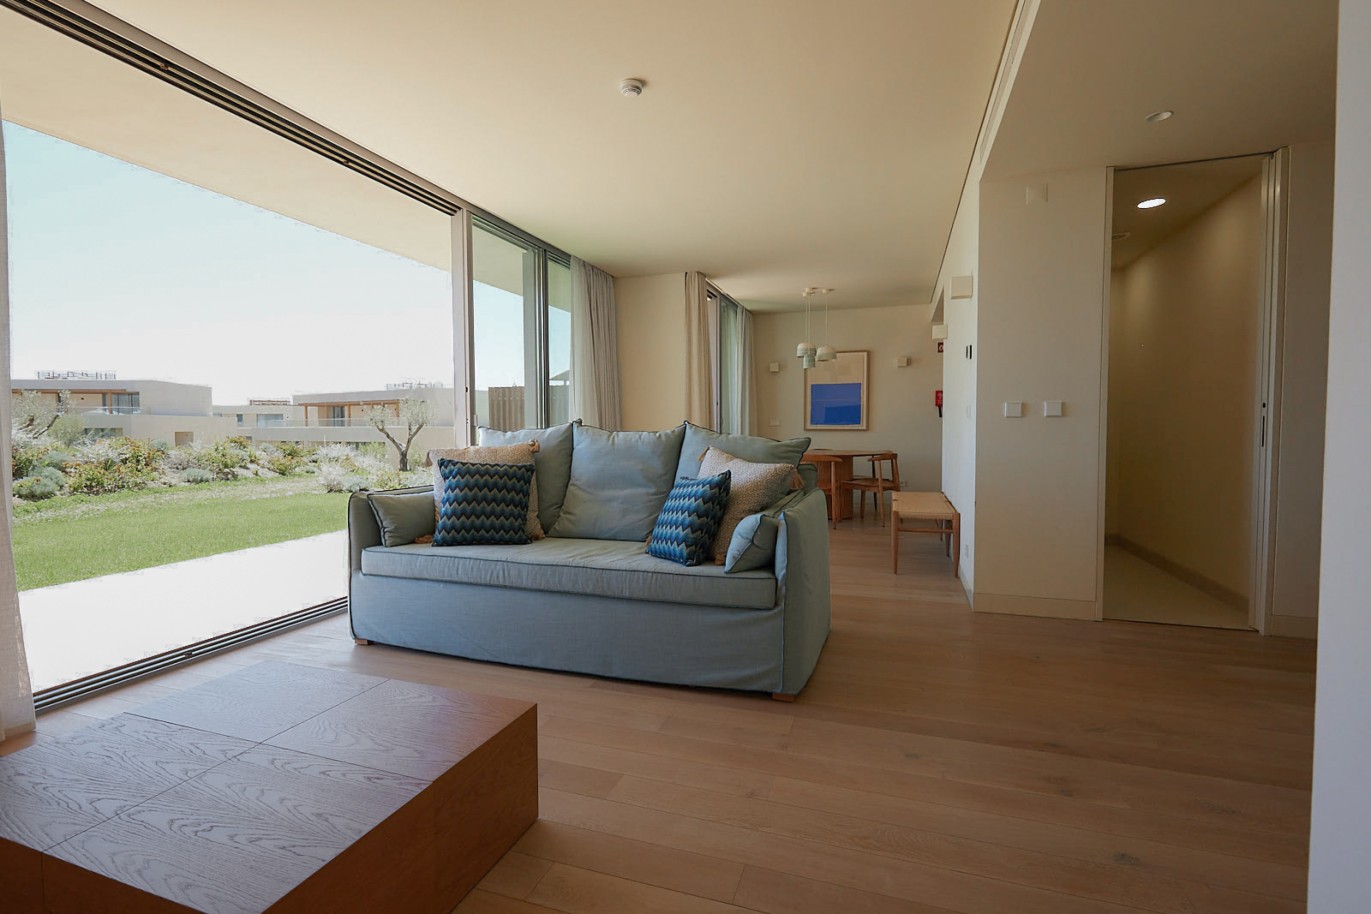 Piso de 2 dormitorios en complejo, en venta en Porches, Algarve_230654